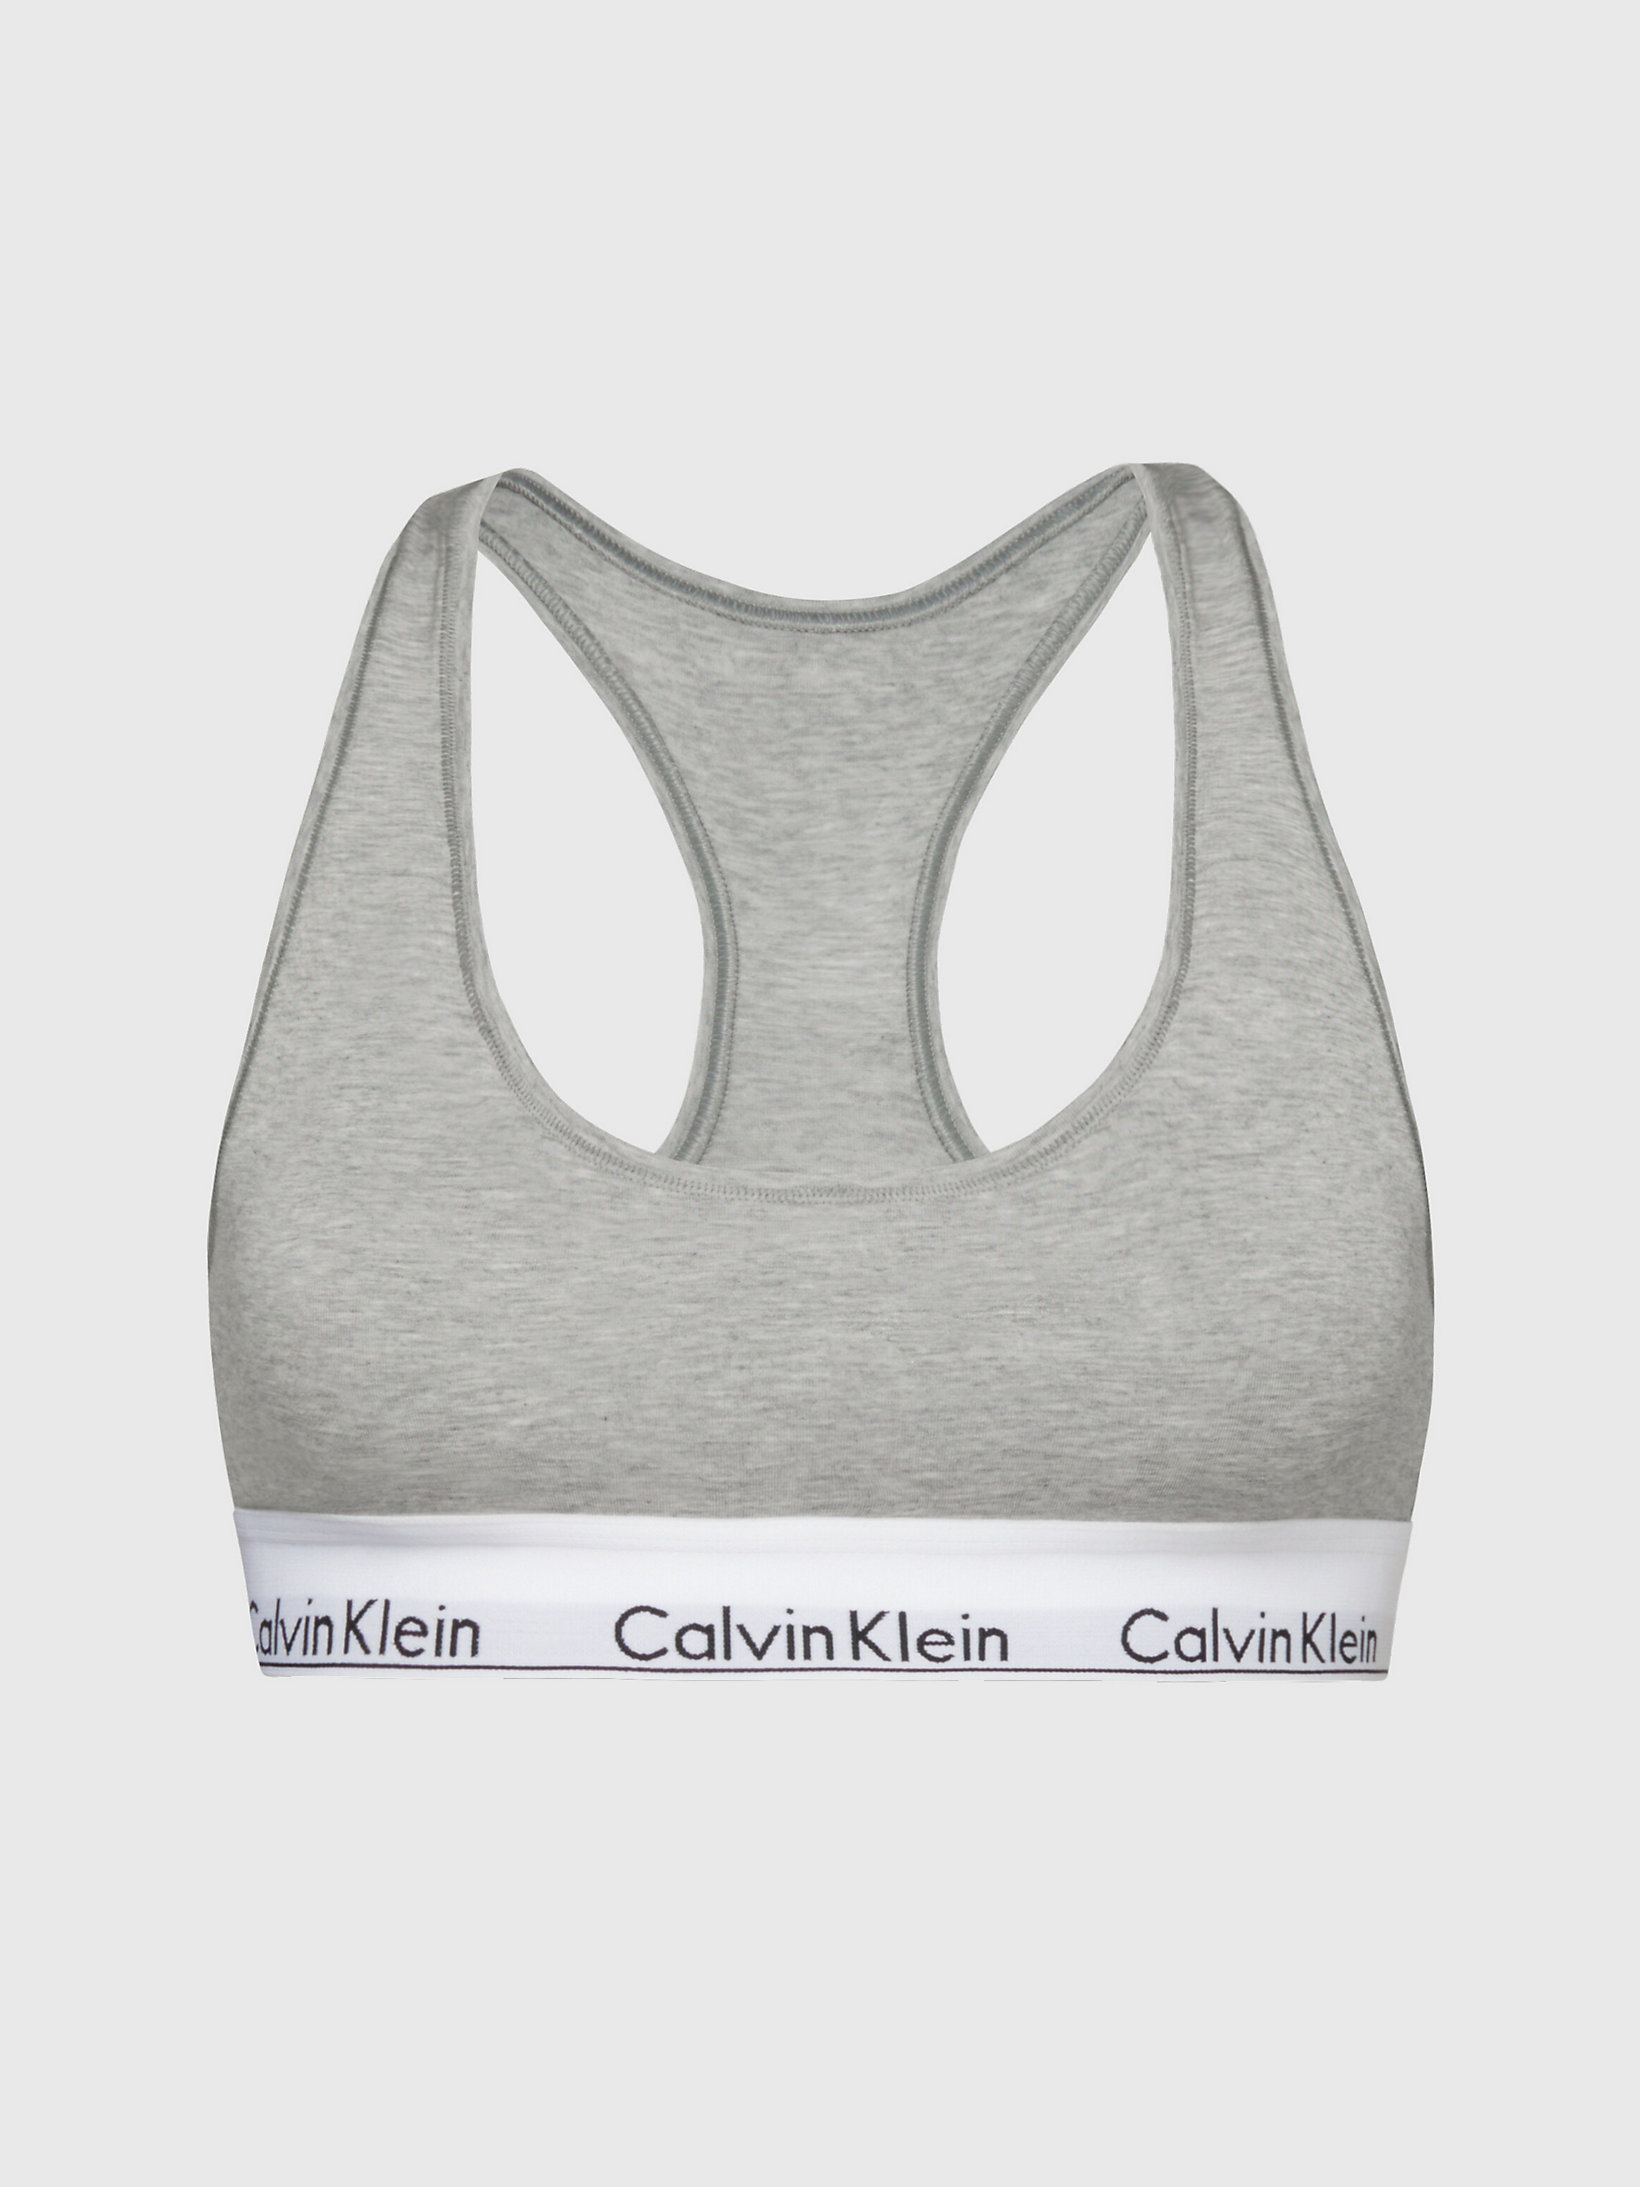 Brassière - Modern Cotton > Grey Heather > undefined femmes > Calvin Klein